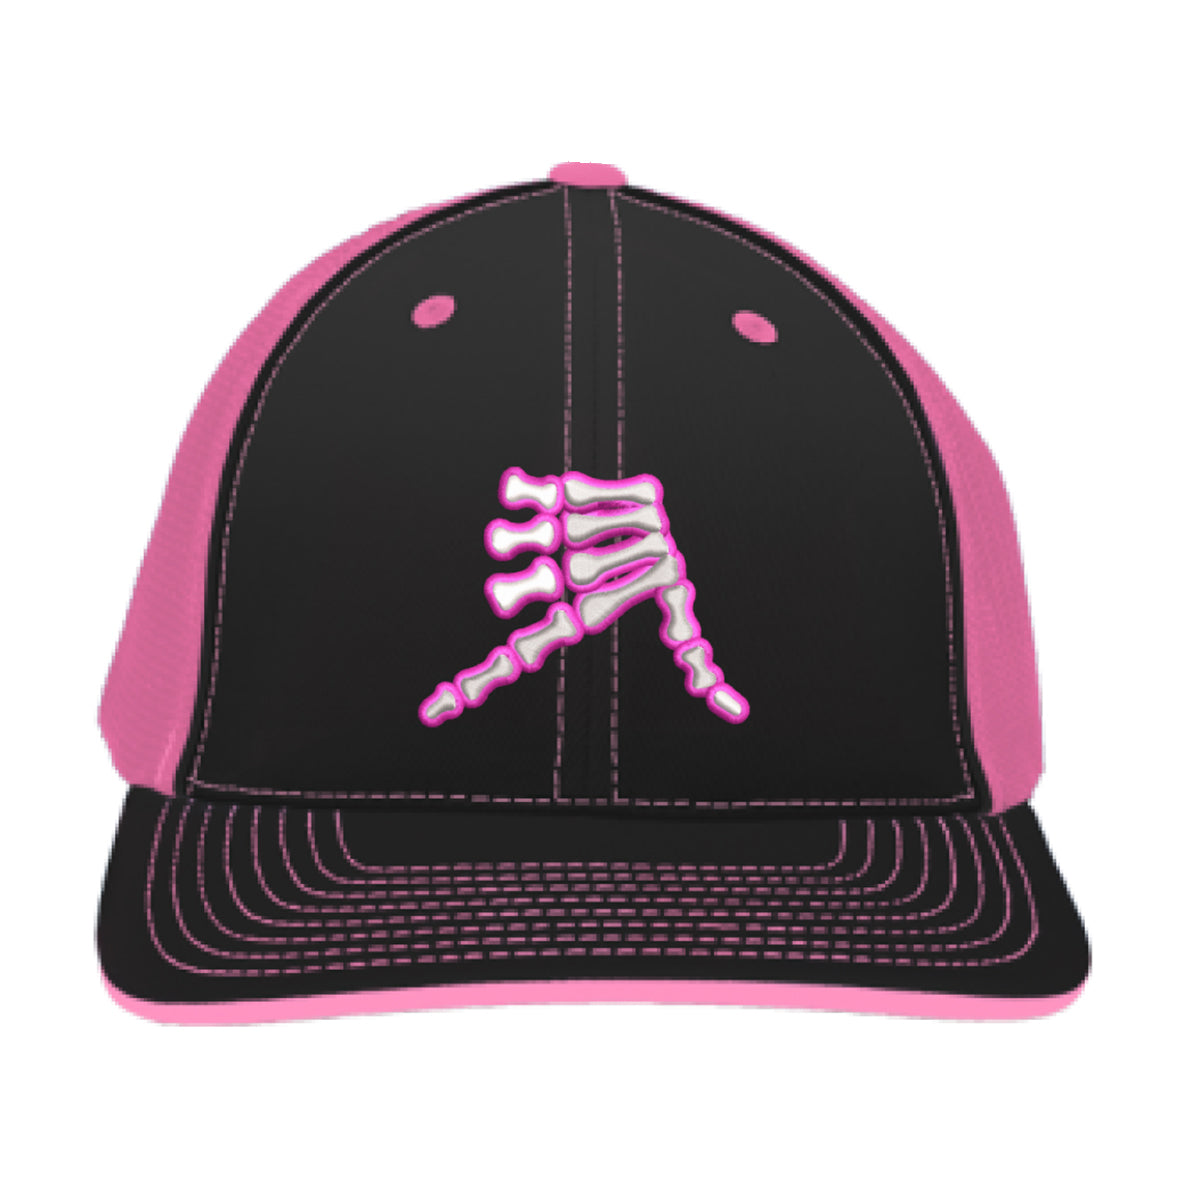 AkS Bones Trucker – & Hat in Black Neon AkSportswear Pink